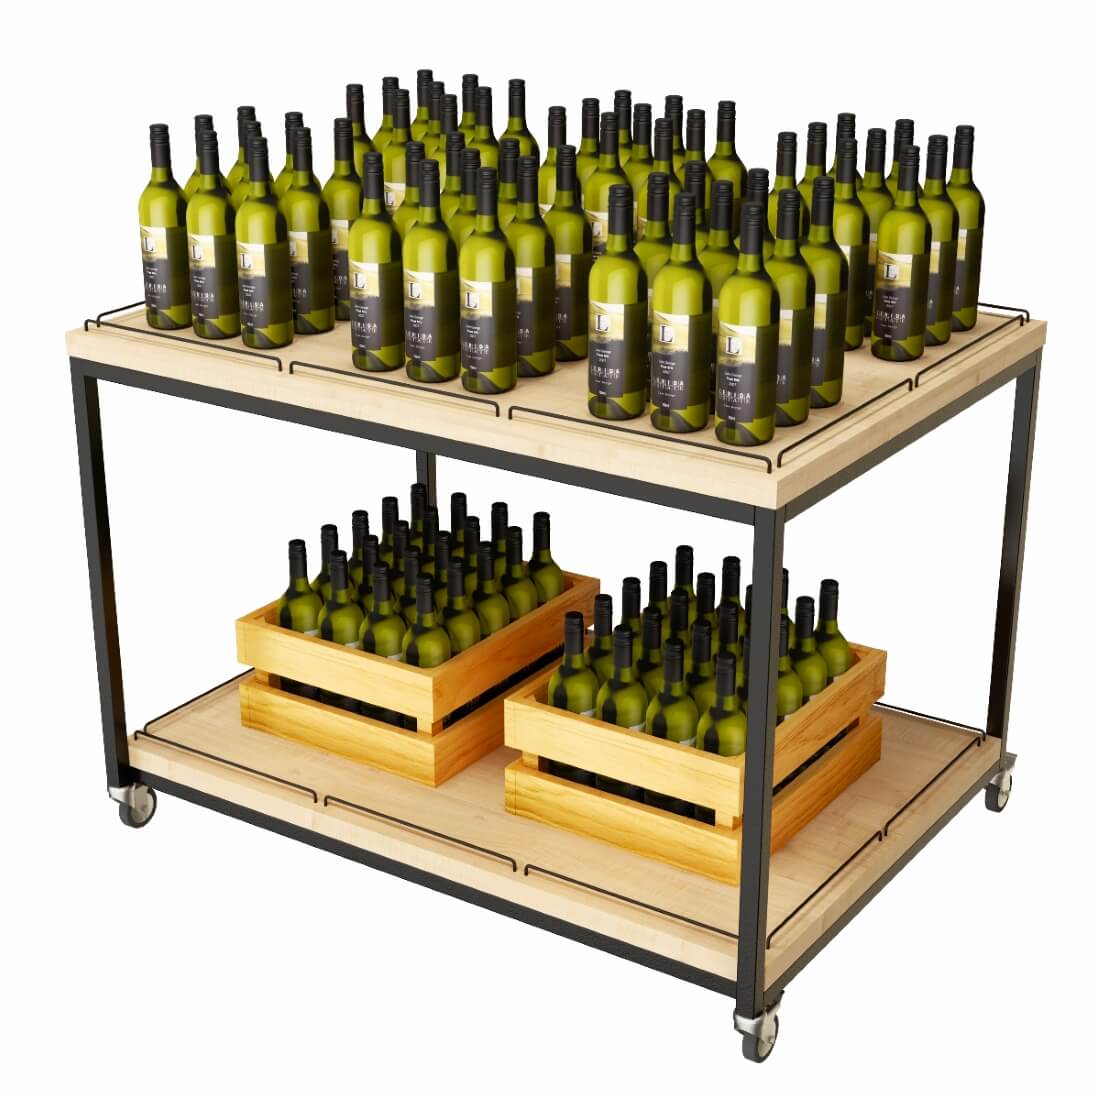 Präsentationstisch für Kistenware, Schwehrlasttisch rollbar. Beispiel mit Weinflaschen